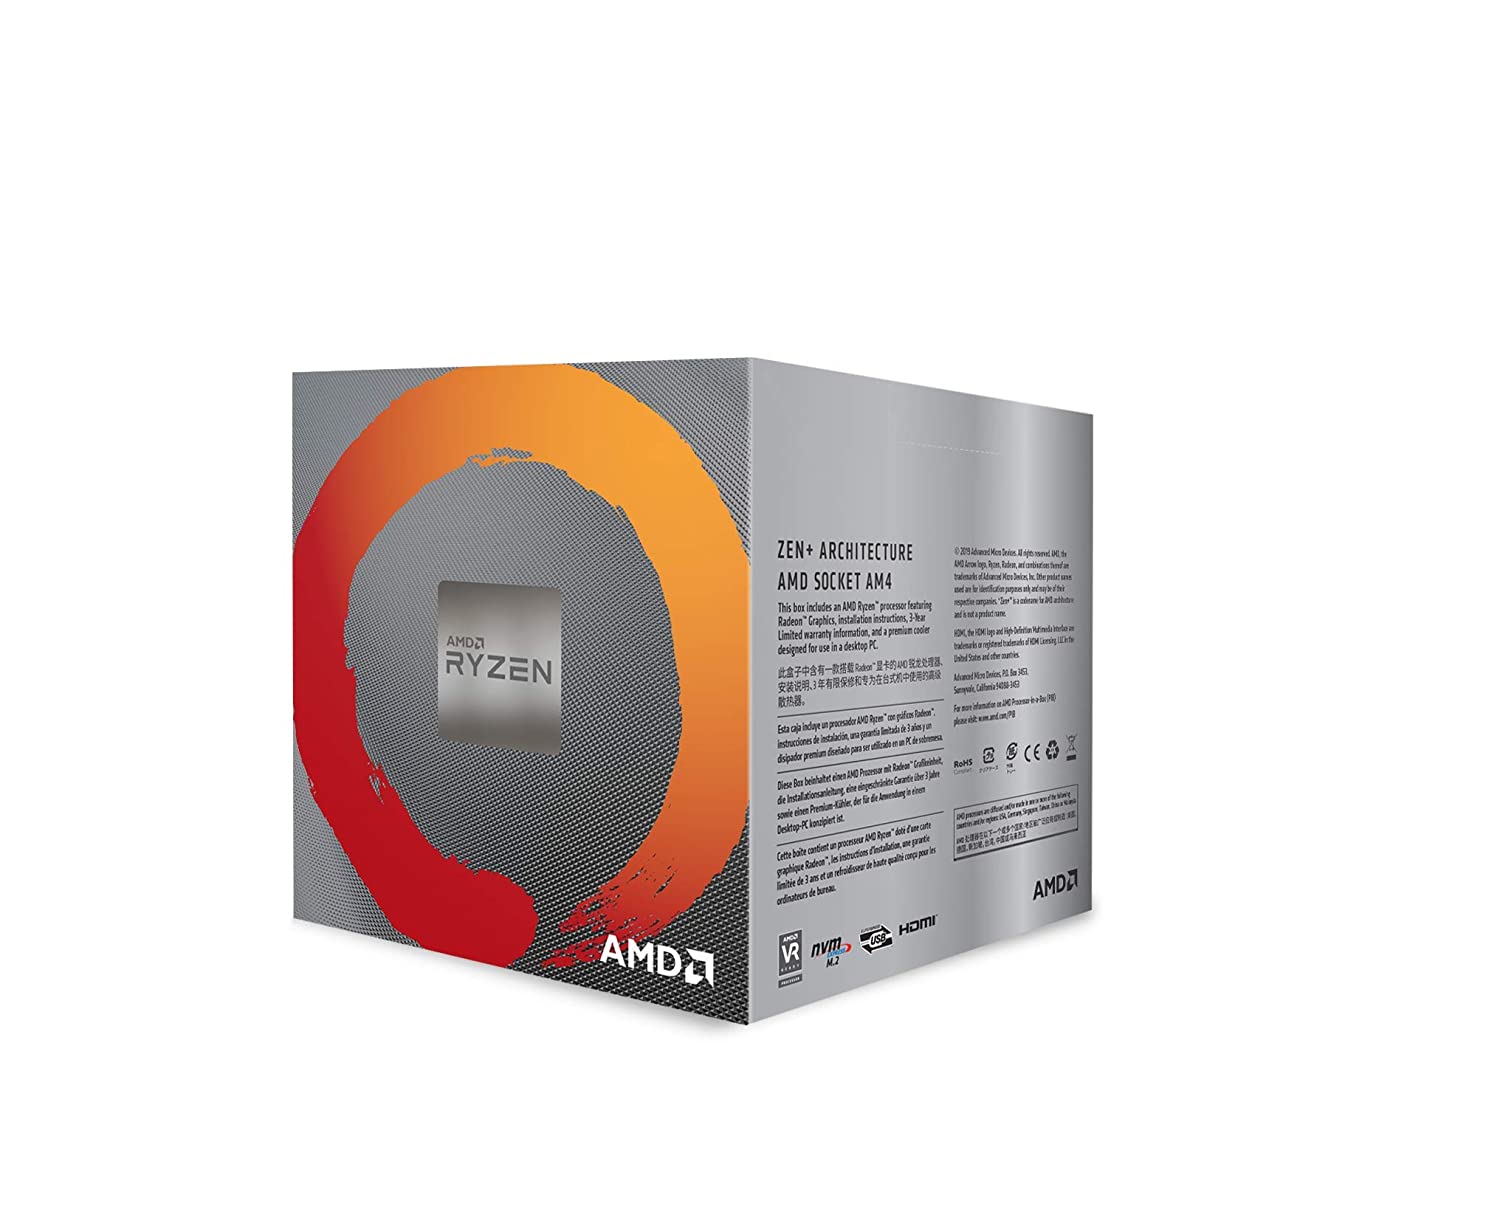 2. AMD Ryzen 5 3400G Processor 4 Cores – YD3400C5FHBOX